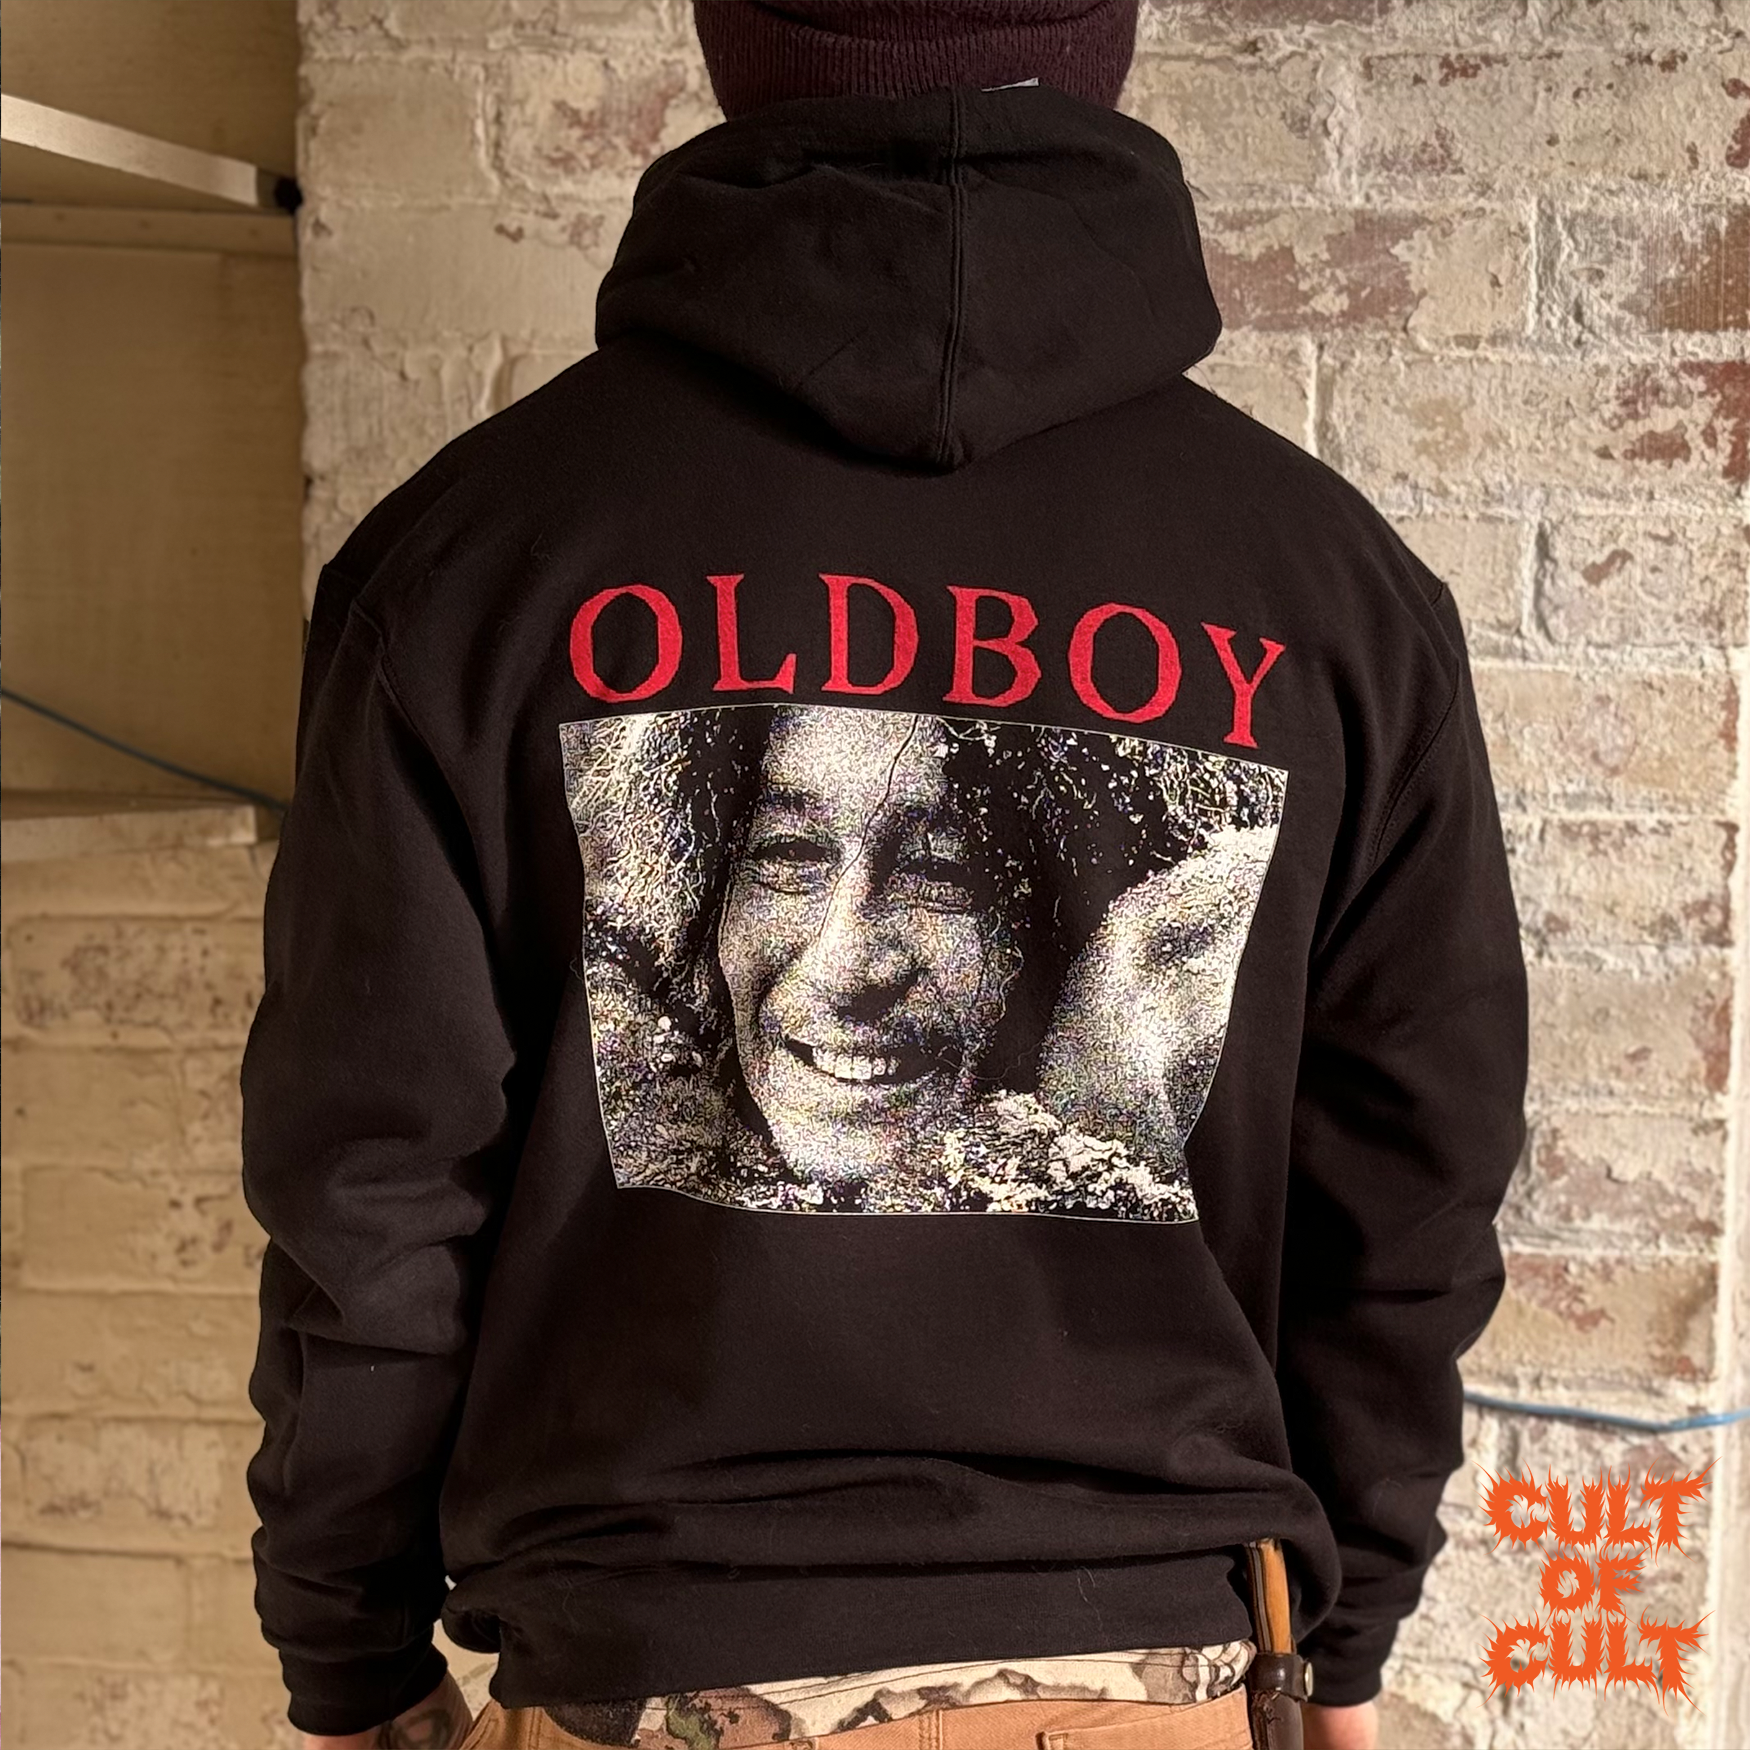 A model wearing a medium sized Oldboy 2003 hoodie